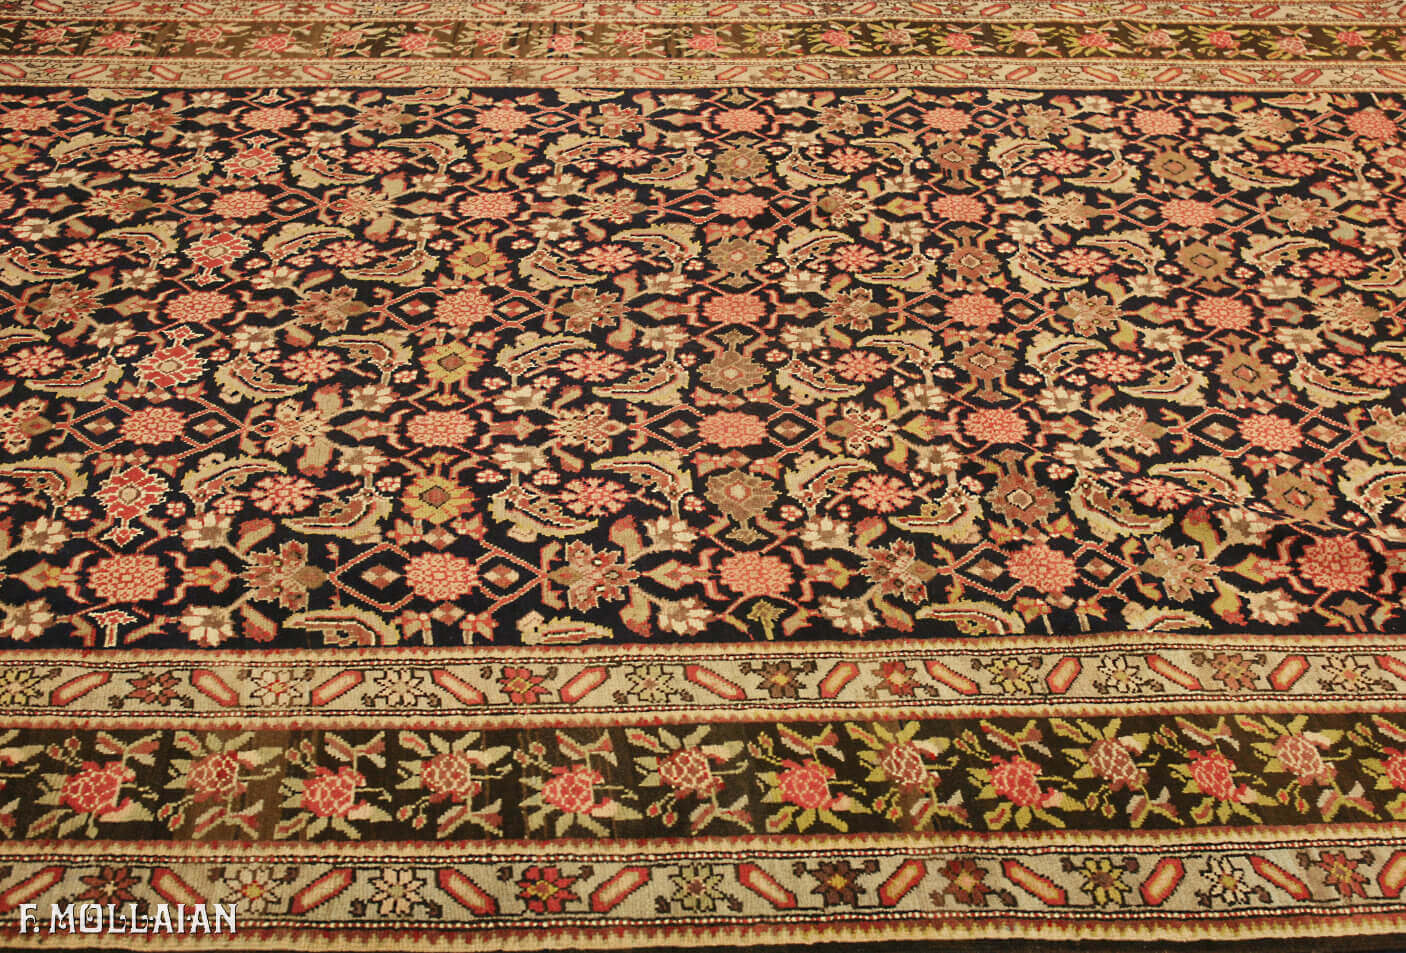 Teppich Kaukasischer Antiker Karabakh (Qarabağ) n°:67076630